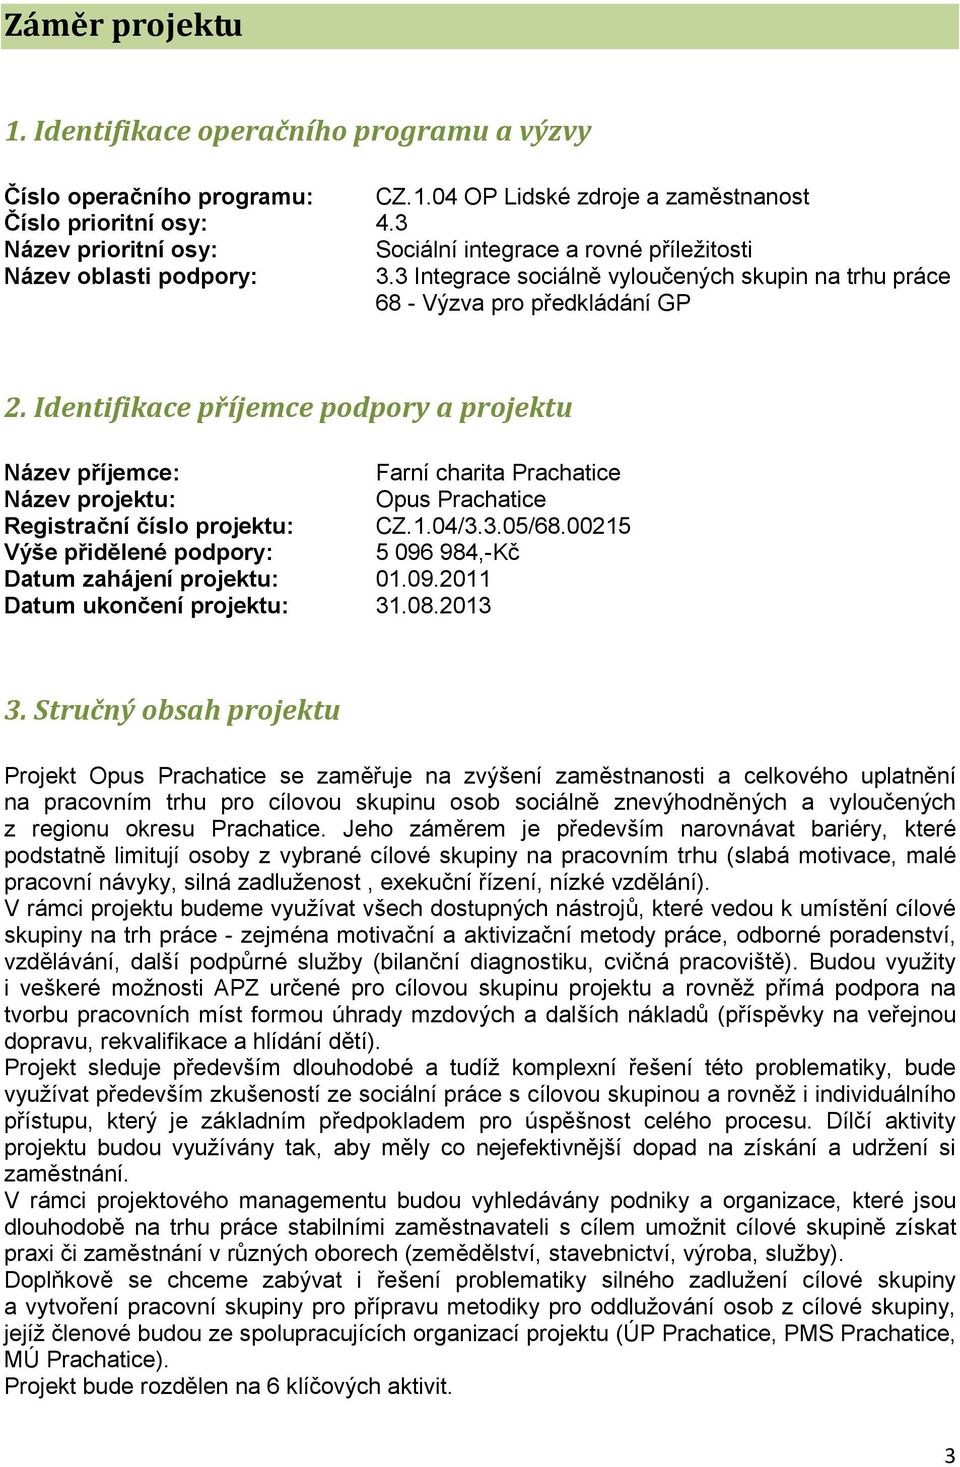 Identifikace příjemce podpory a projektu Název příjemce: Farní charita Prachatice Název projektu: Opus Prachatice Registrační číslo projektu: CZ.1.04/3.3.05/68.